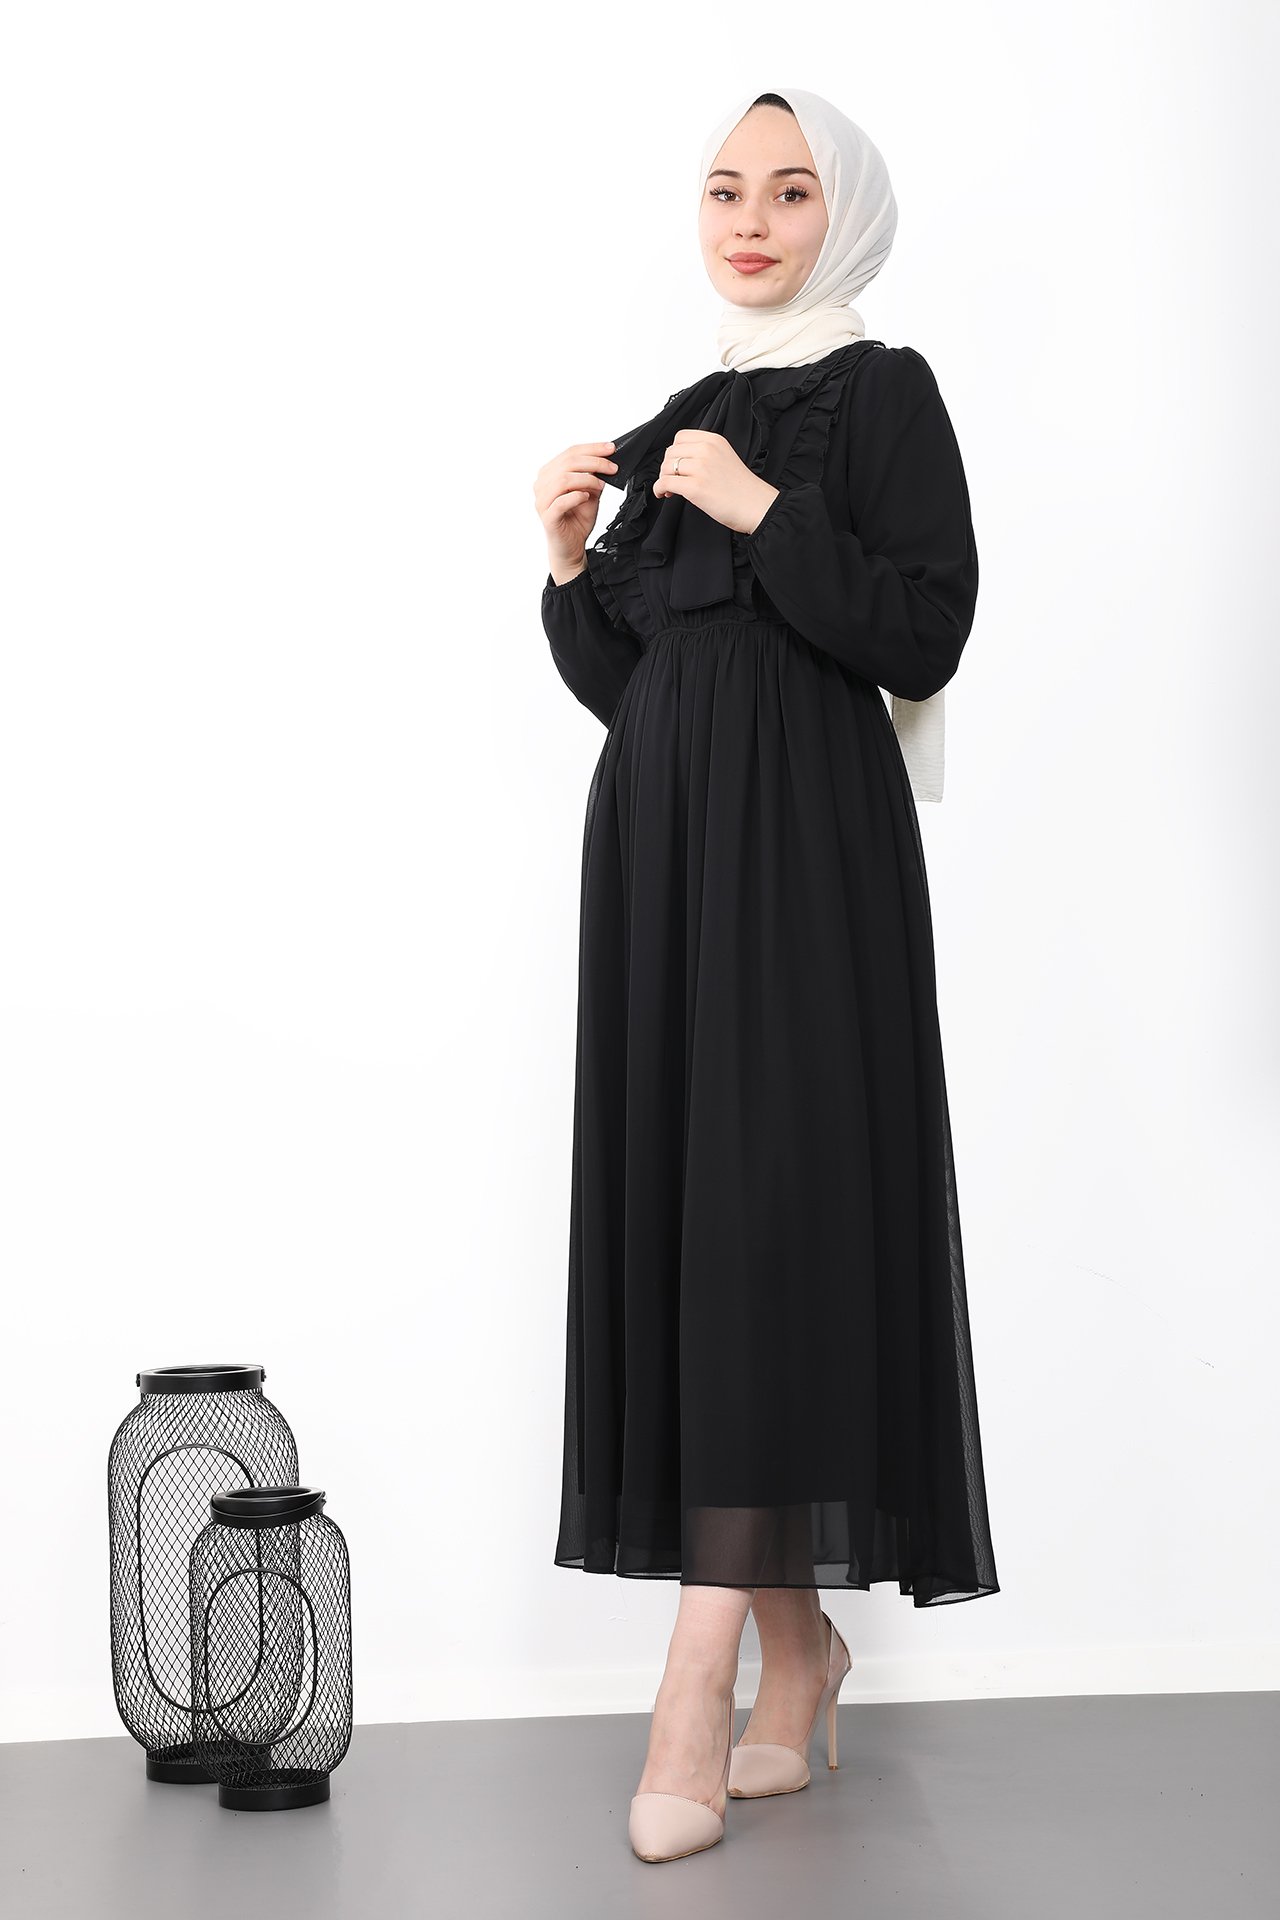 GİZAGİYİM - Fırfırlı Şifon Tesettür Elbise Siyah